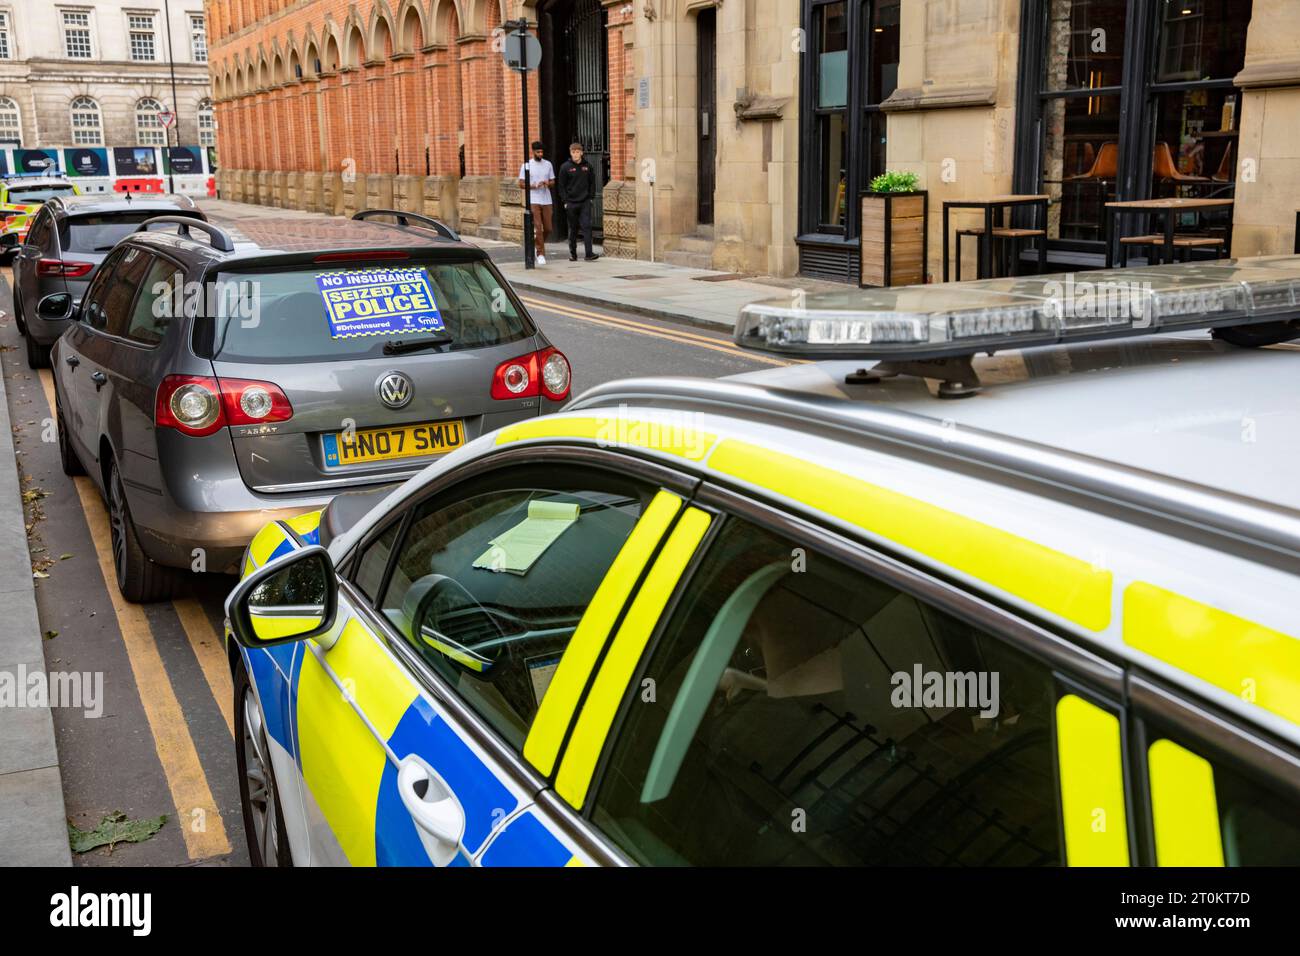 Manchester Polizei, Polizei hat einen VW Passat Auto beschlagnahmt, weil er keine Versicherung hatte, beschlagnahmt für keinen Versicherungsaufkleber auf dem Auto, Manchester, England Stockfoto